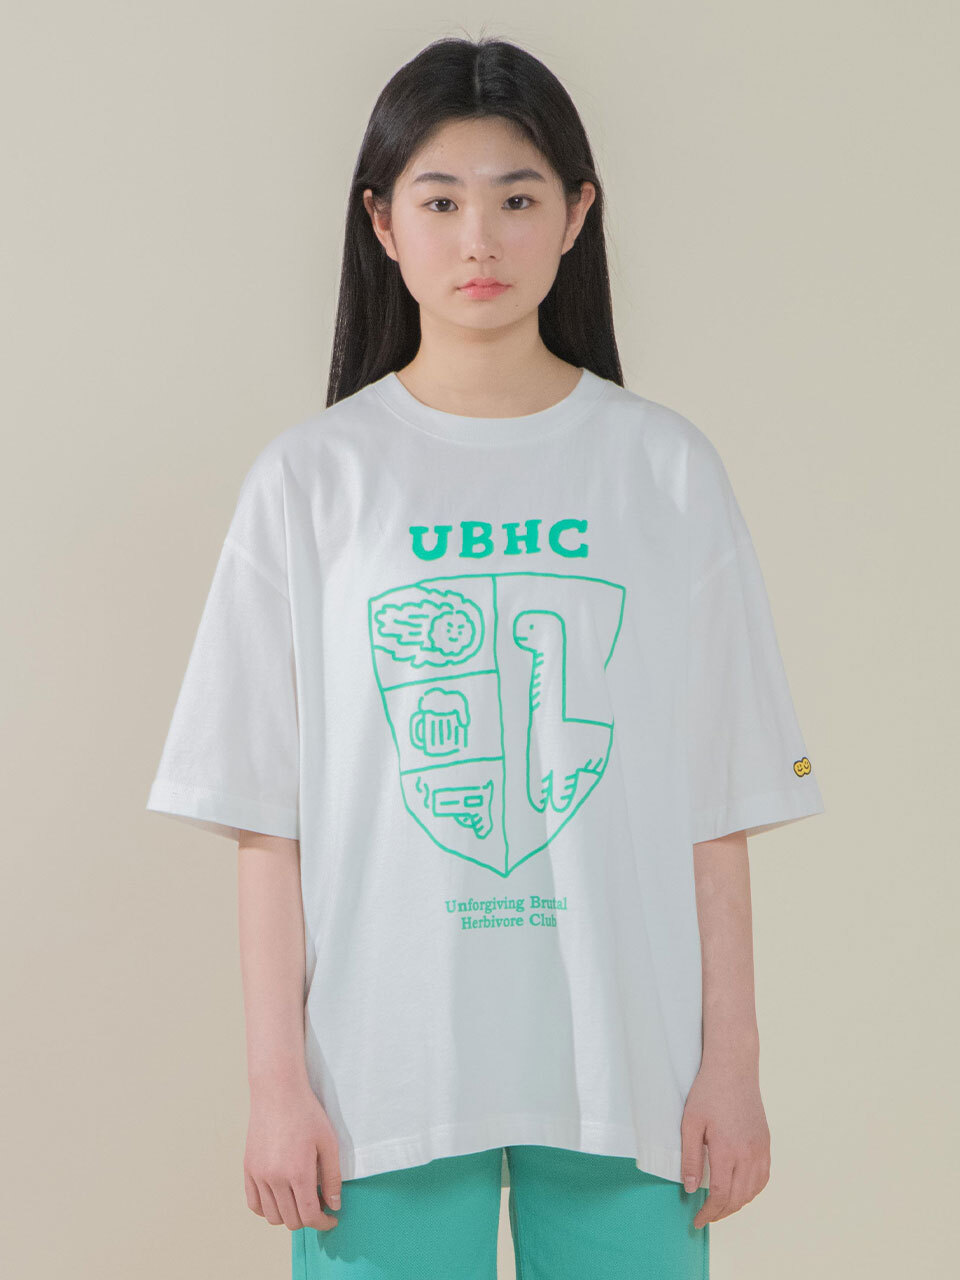 꼬모니노즈X조구만스튜디오 콜라보레이션 UBHC 티셔츠 JOGUMAN CO UBHC TS